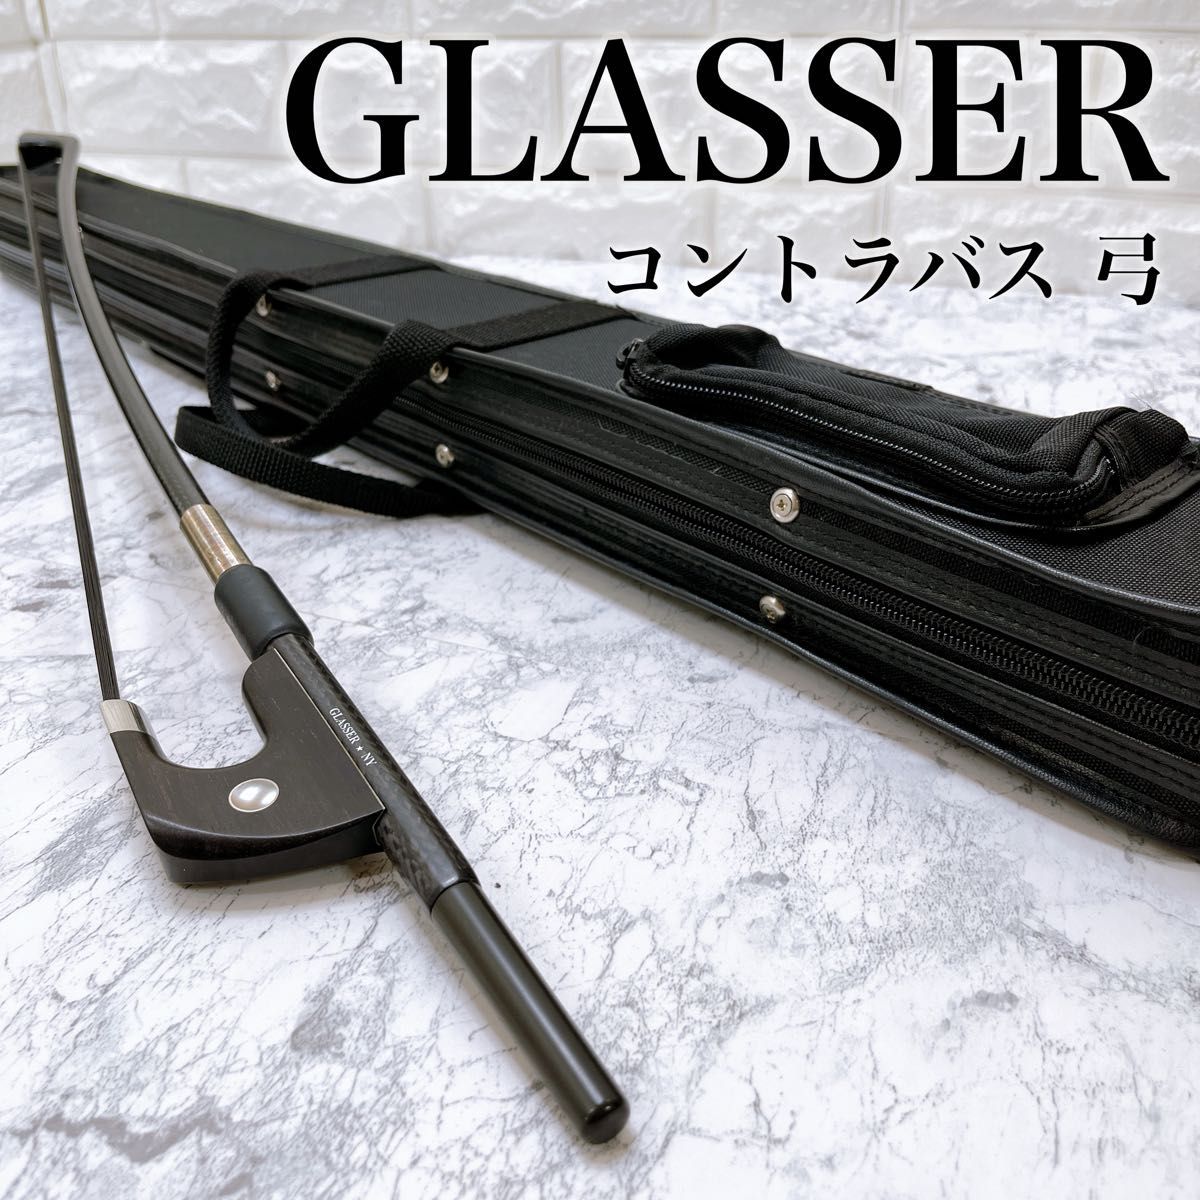 【良品】 GLASSER グラッサー ブレイデッド コントラバス 弓 ジャーマン式 黒毛 ケース付き